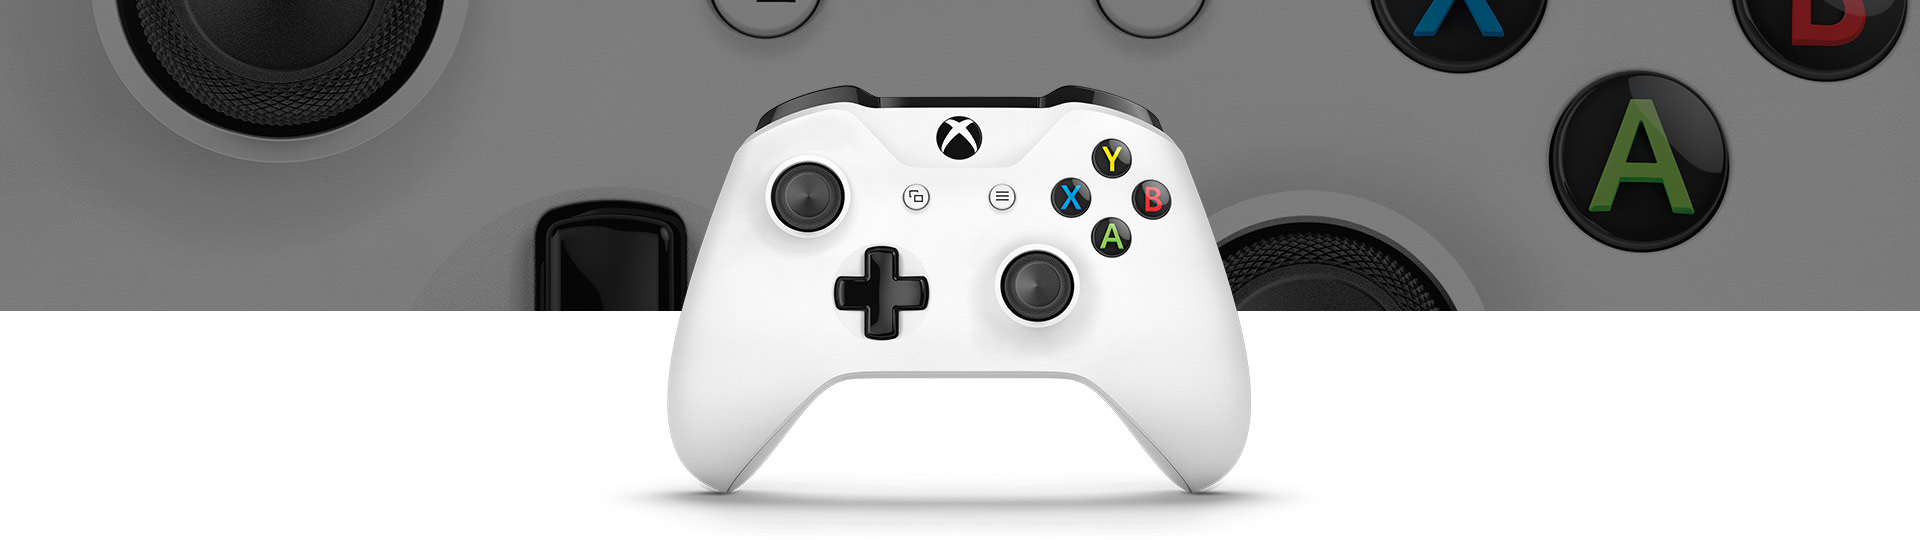 Xbox vezeték nélküli kontroller